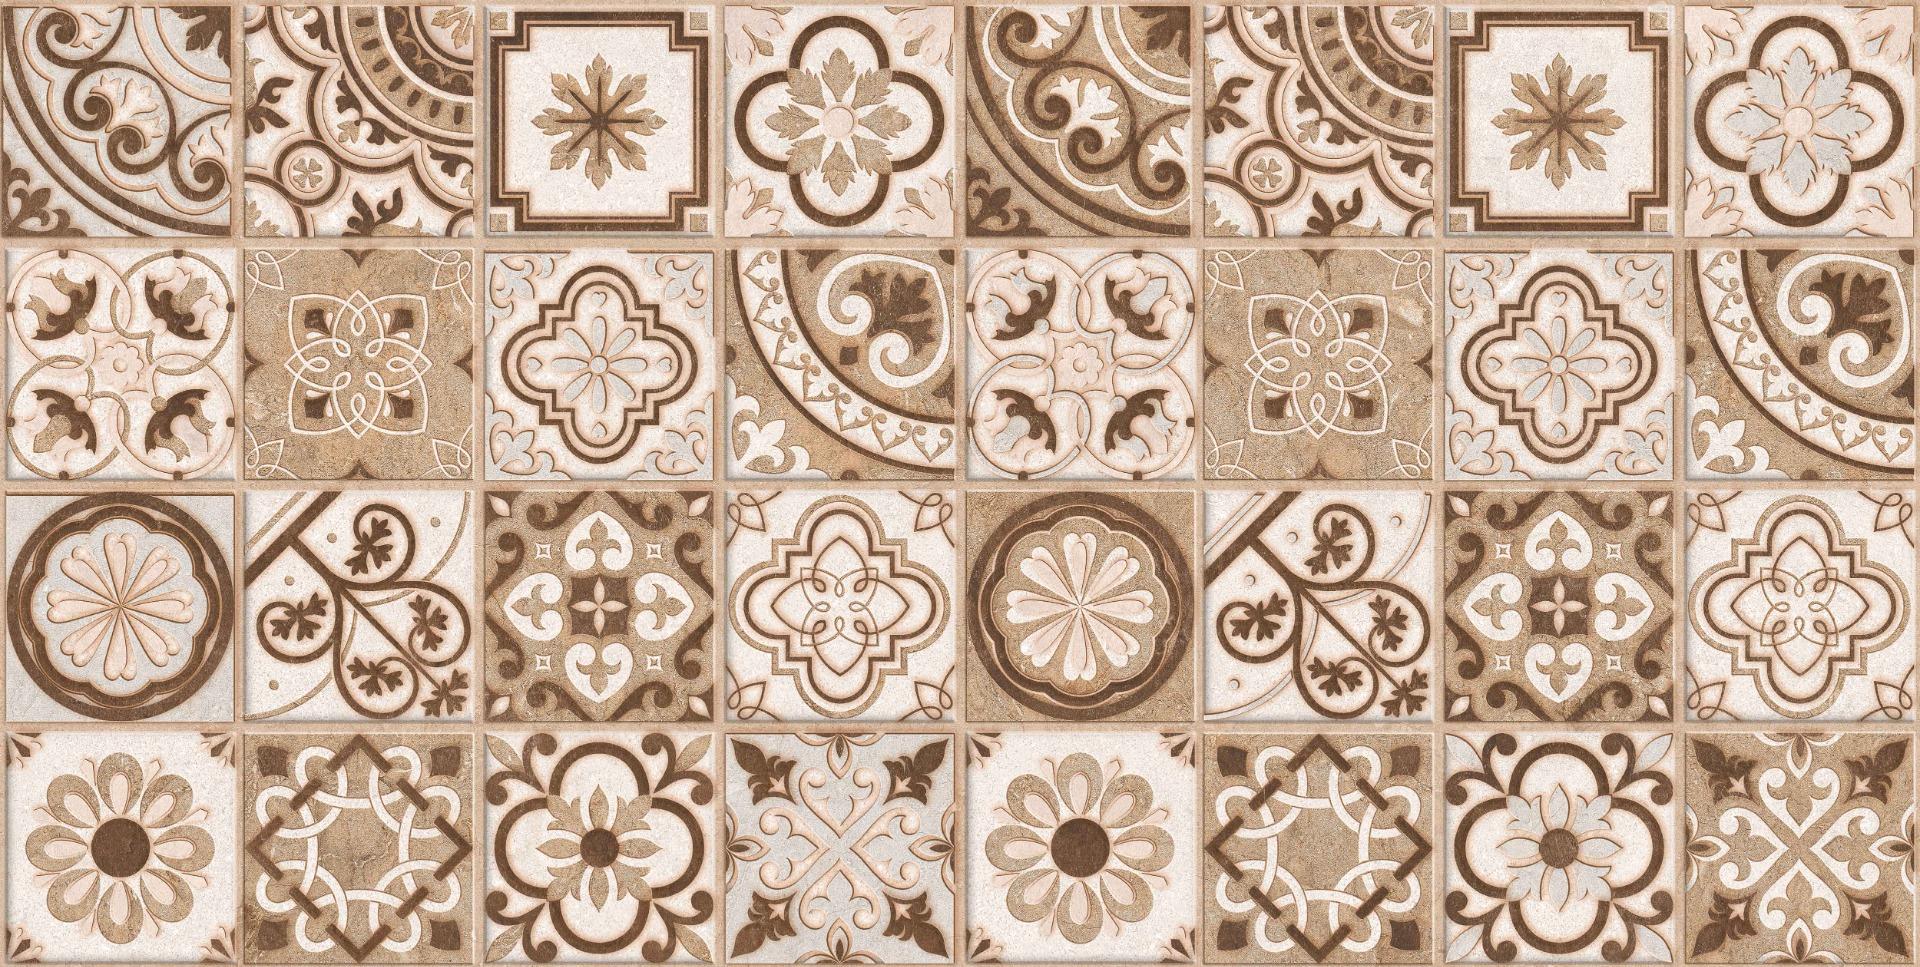 Digital Glazed Vitrified Tiles for Bathroom Tiles, Living Room Tiles, Kitchen Tiles, Bedroom Tiles, Accent Tiles, Bar/Restaurant